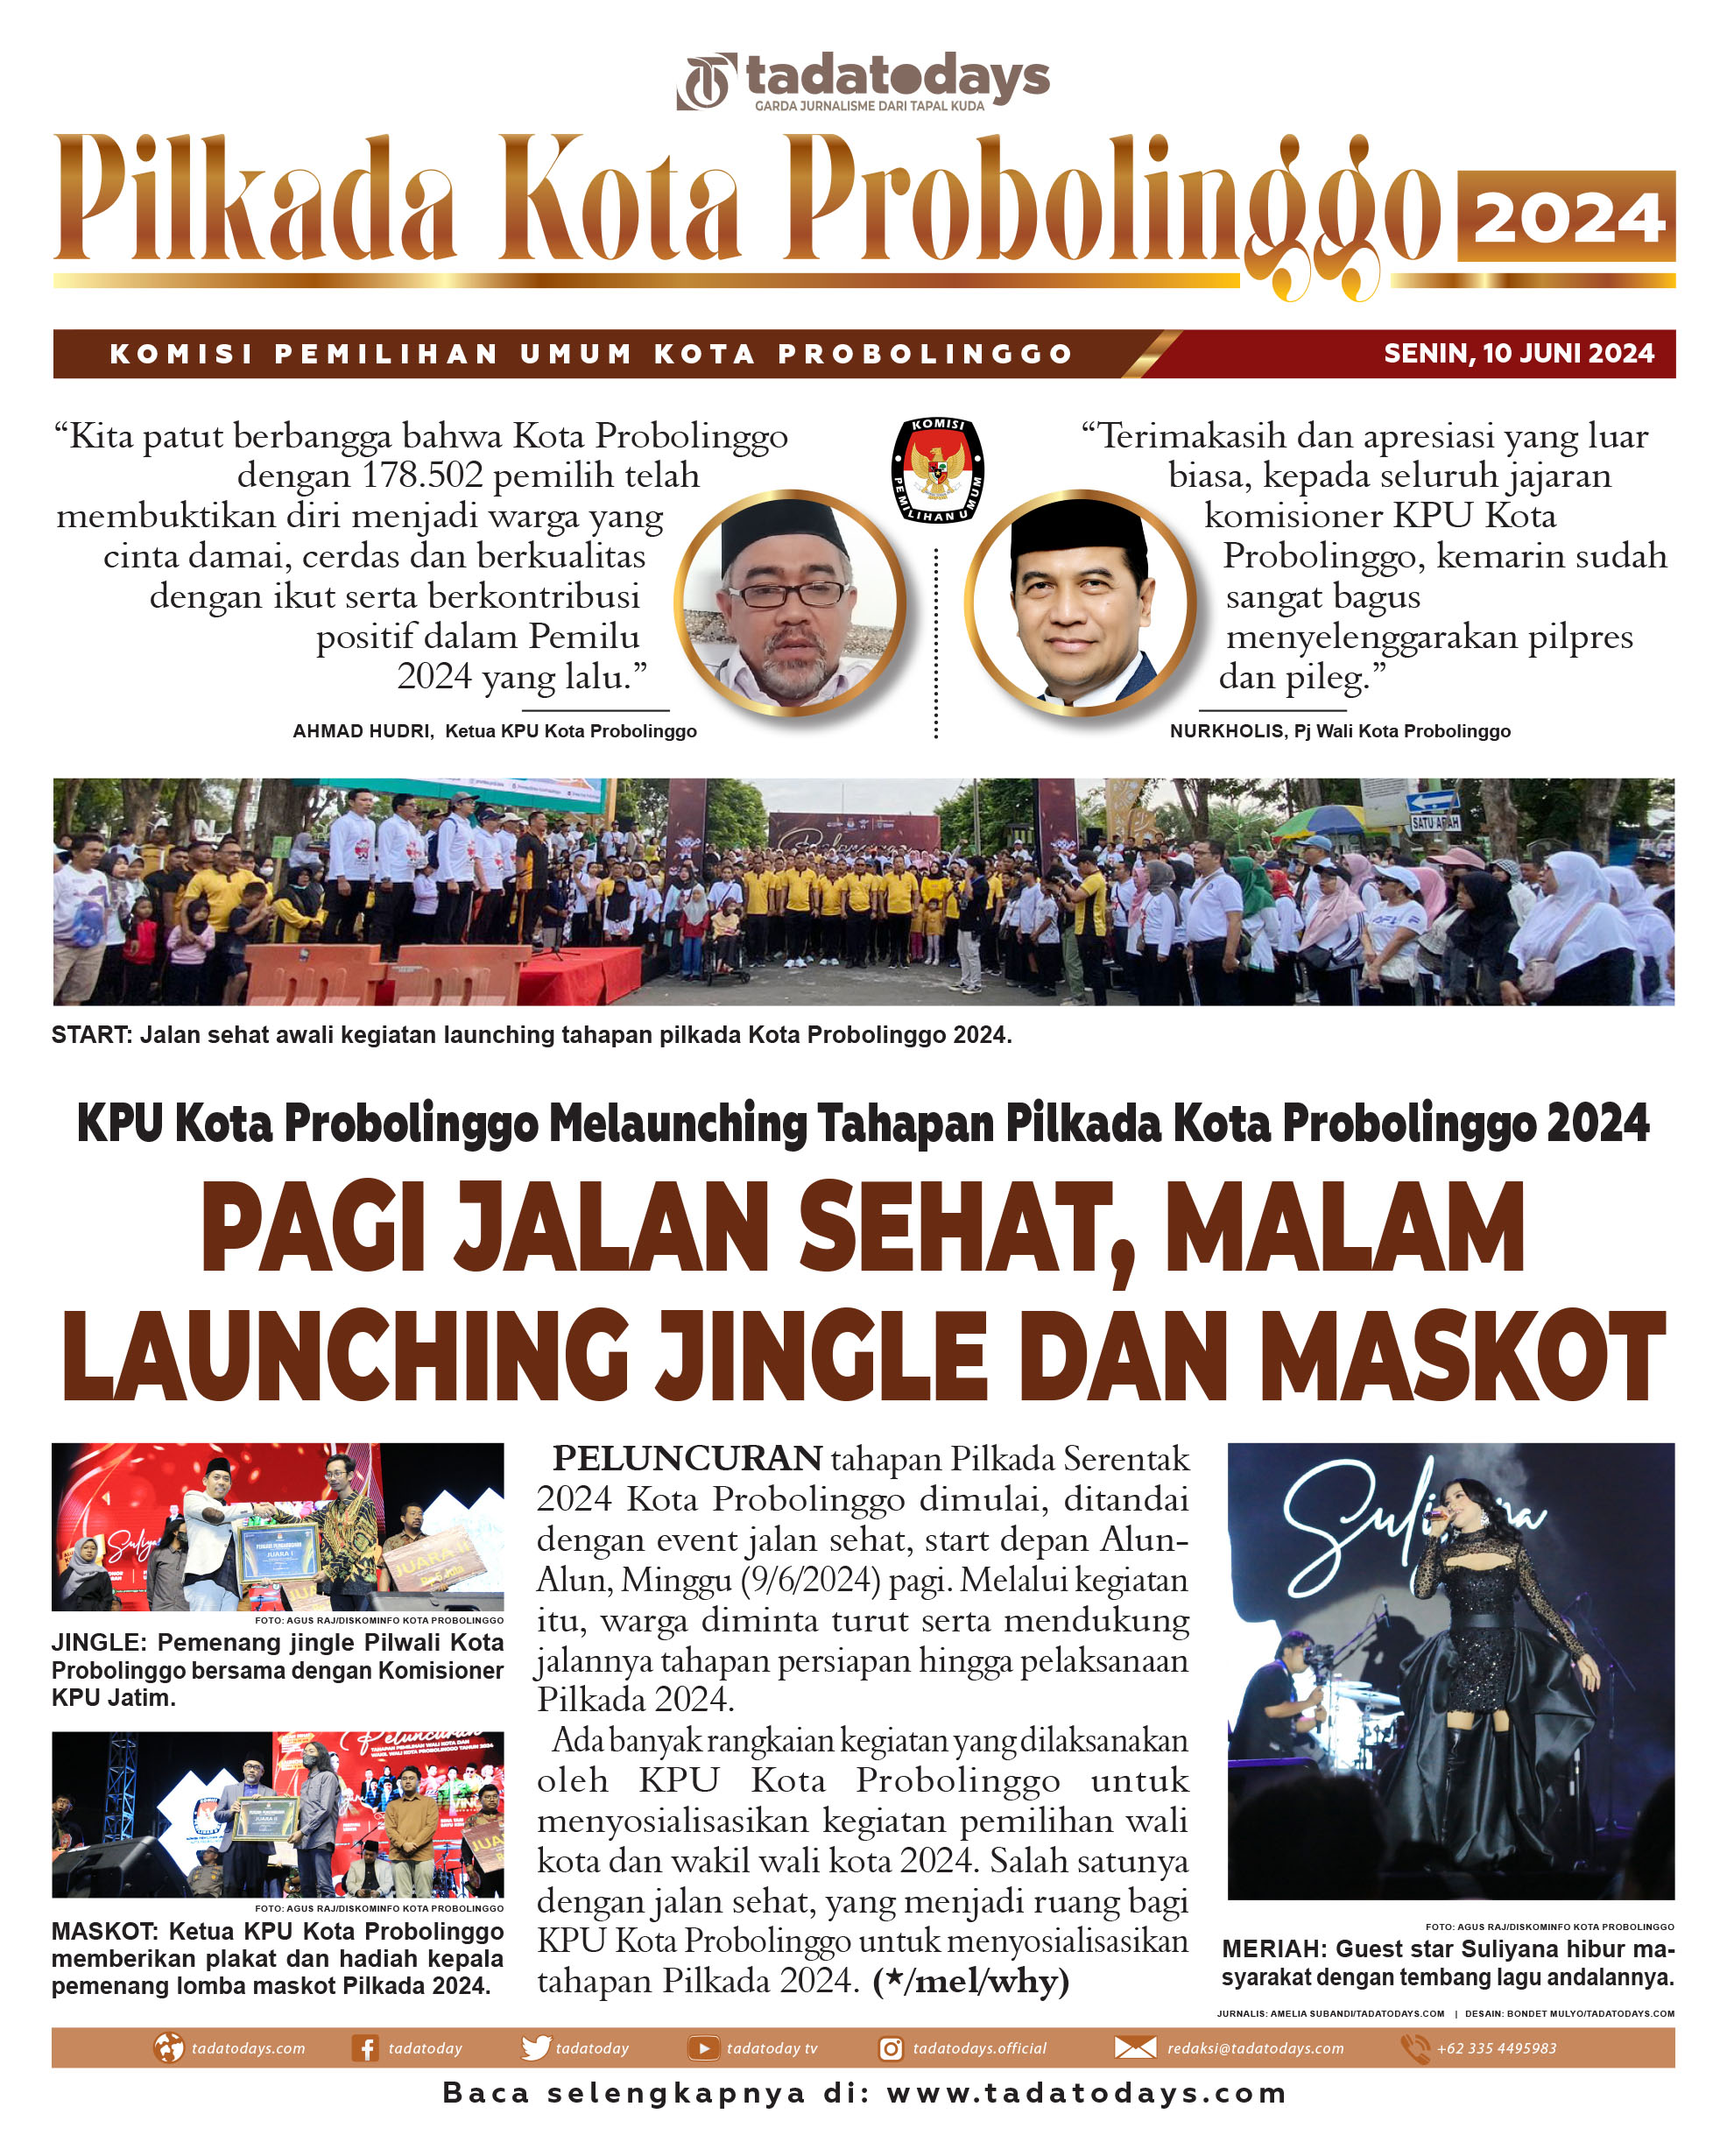 KPU Kota Probolinggo Launching Tahapan Pilkada Kota Probolinggo 2024